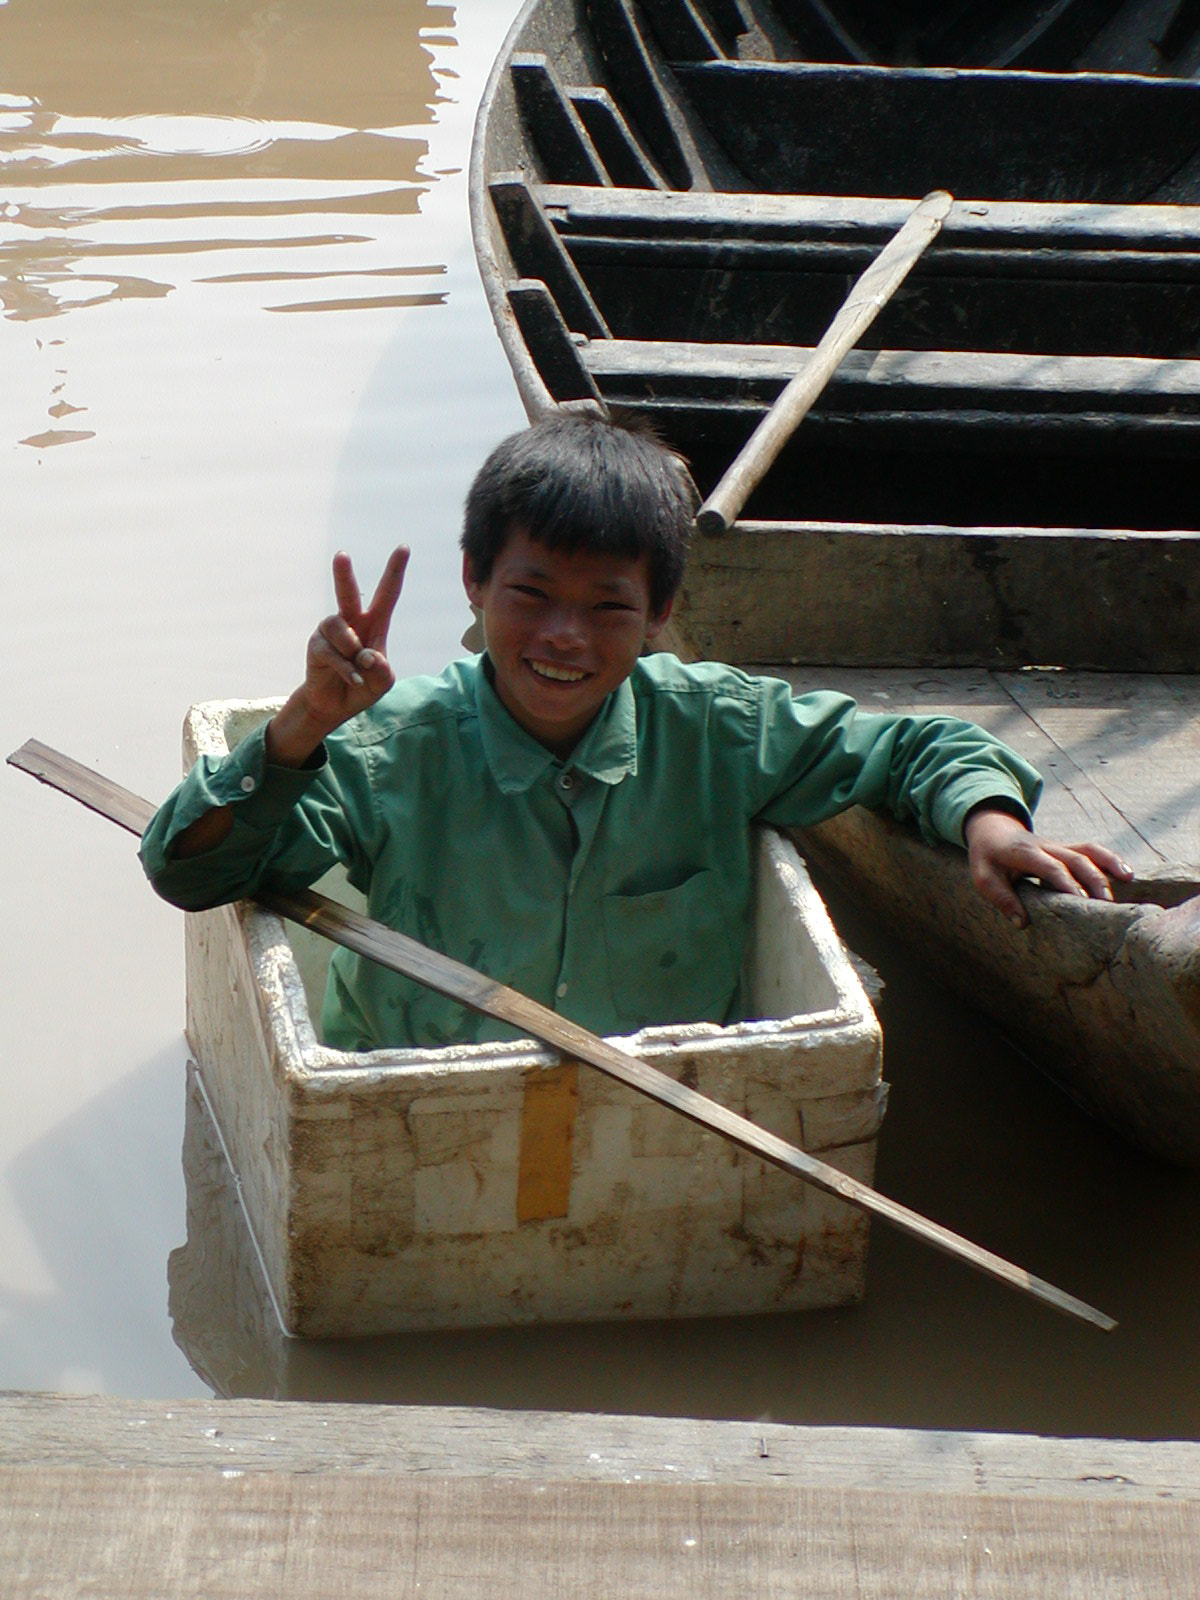 Olympus C700UZ sample photo. Cambodia boat boy photography